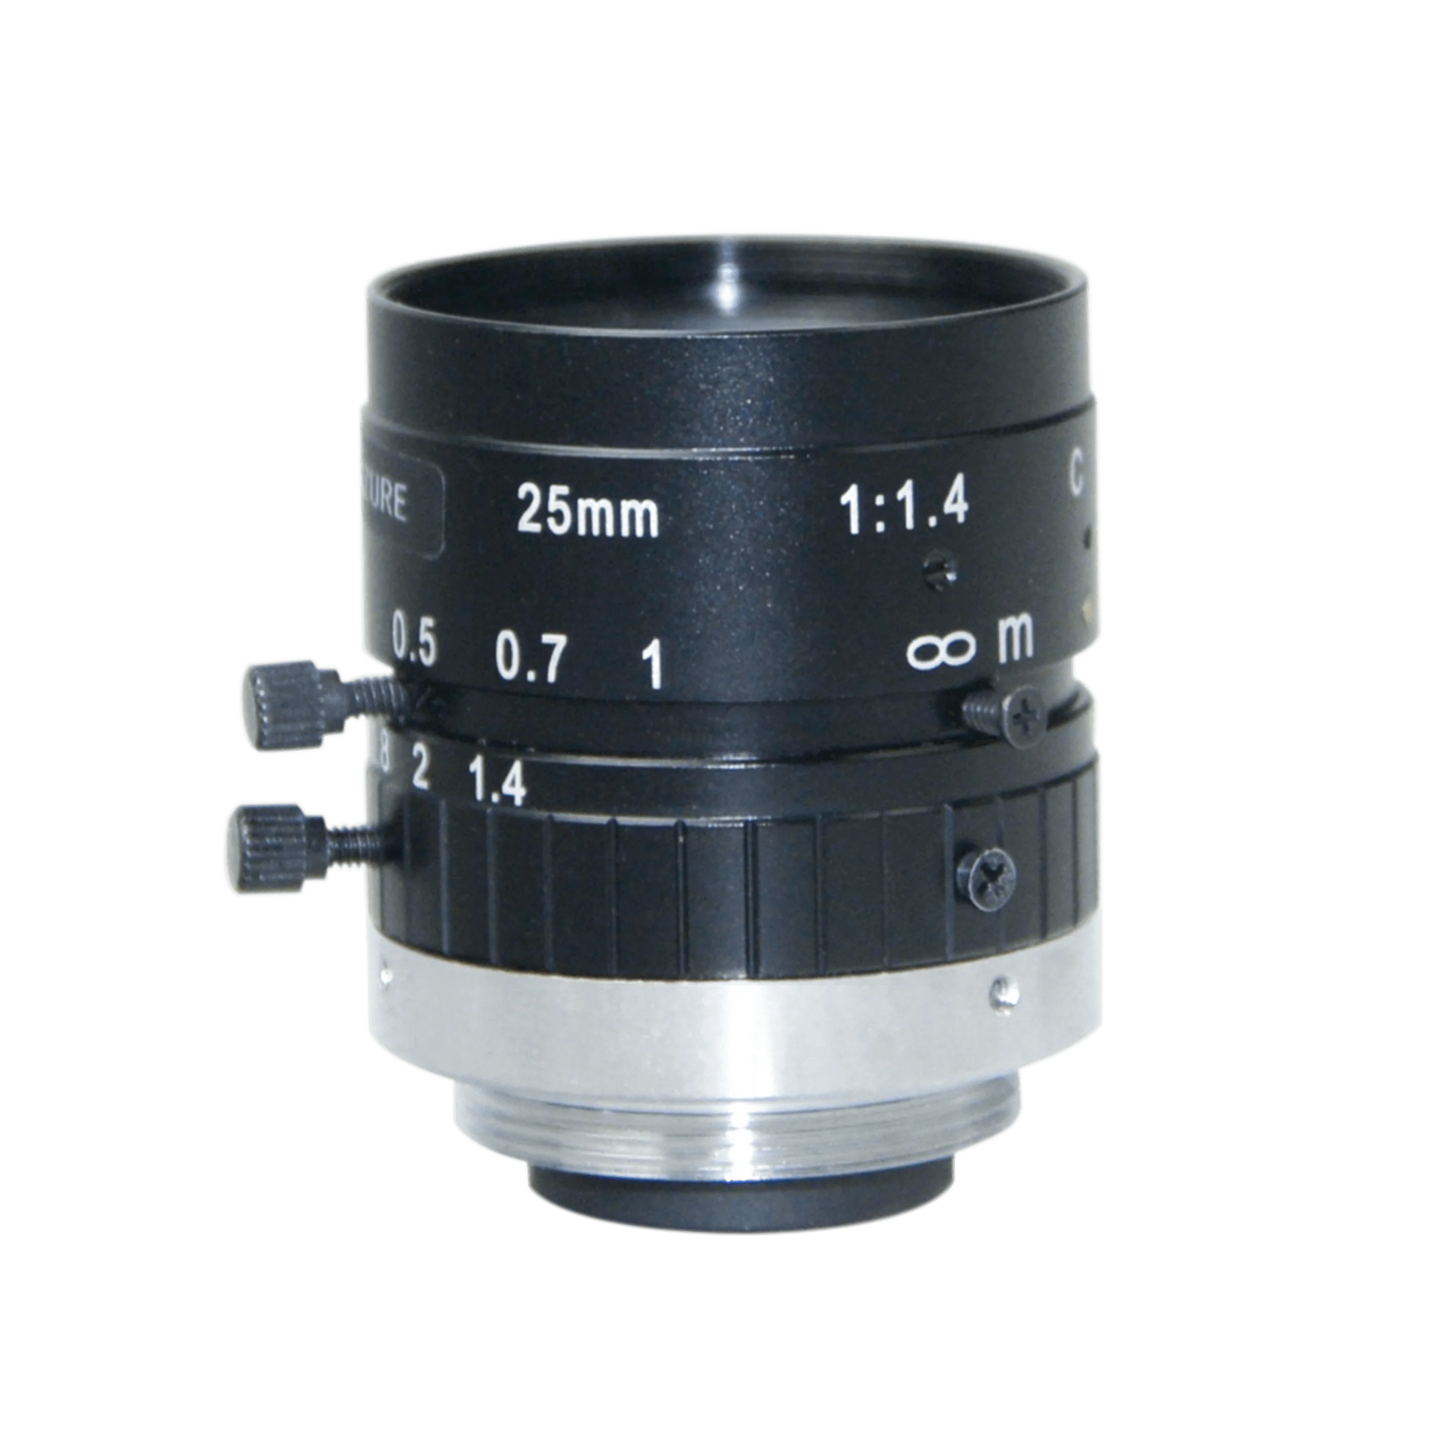 25mm 2/3" 2MP C-Mount Lens